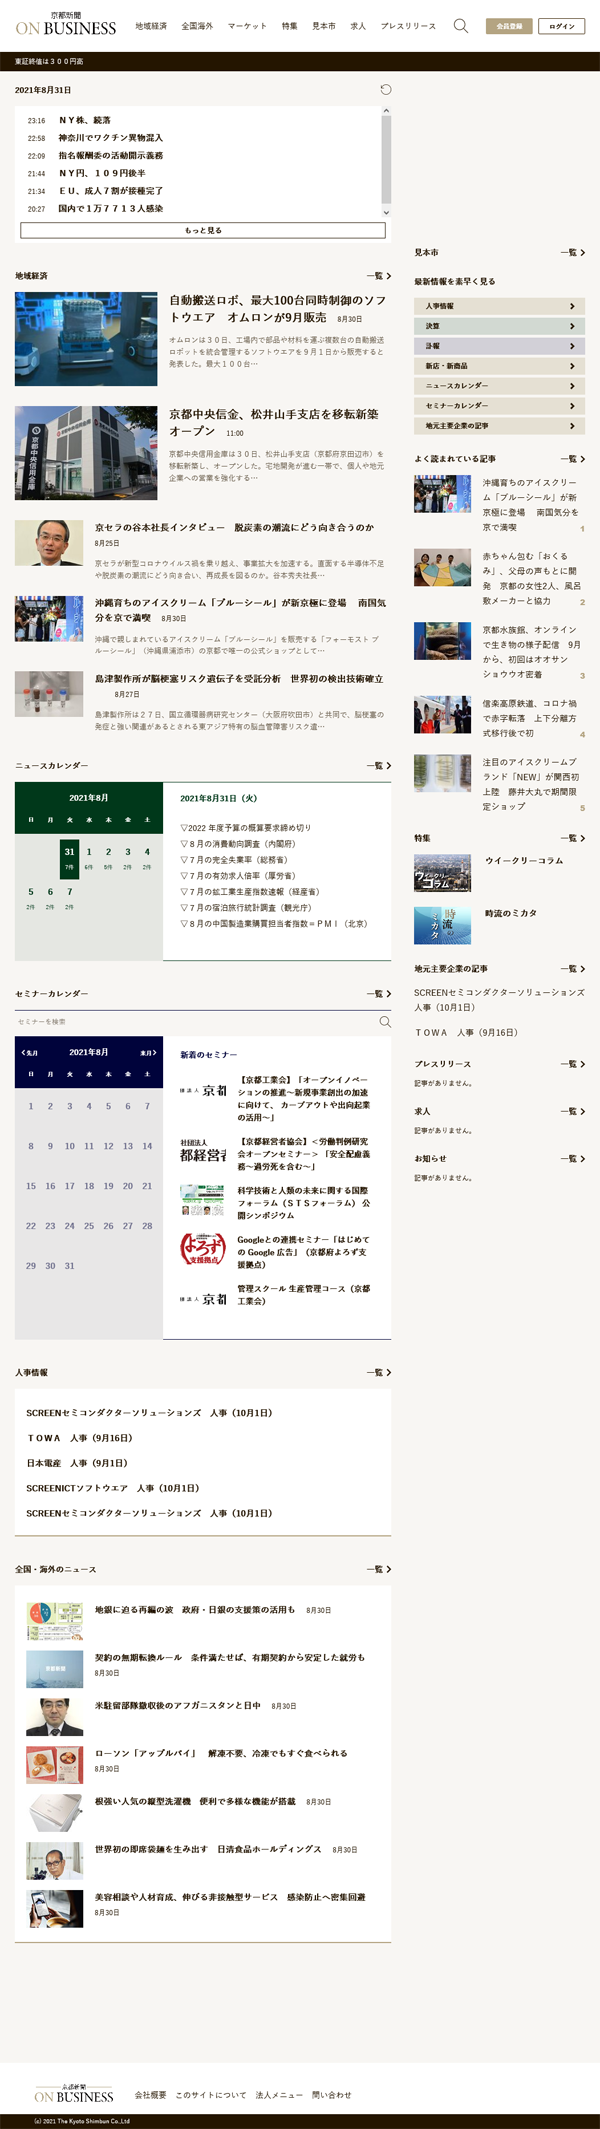 京都新聞 ON BUSINESS サイトイメージ